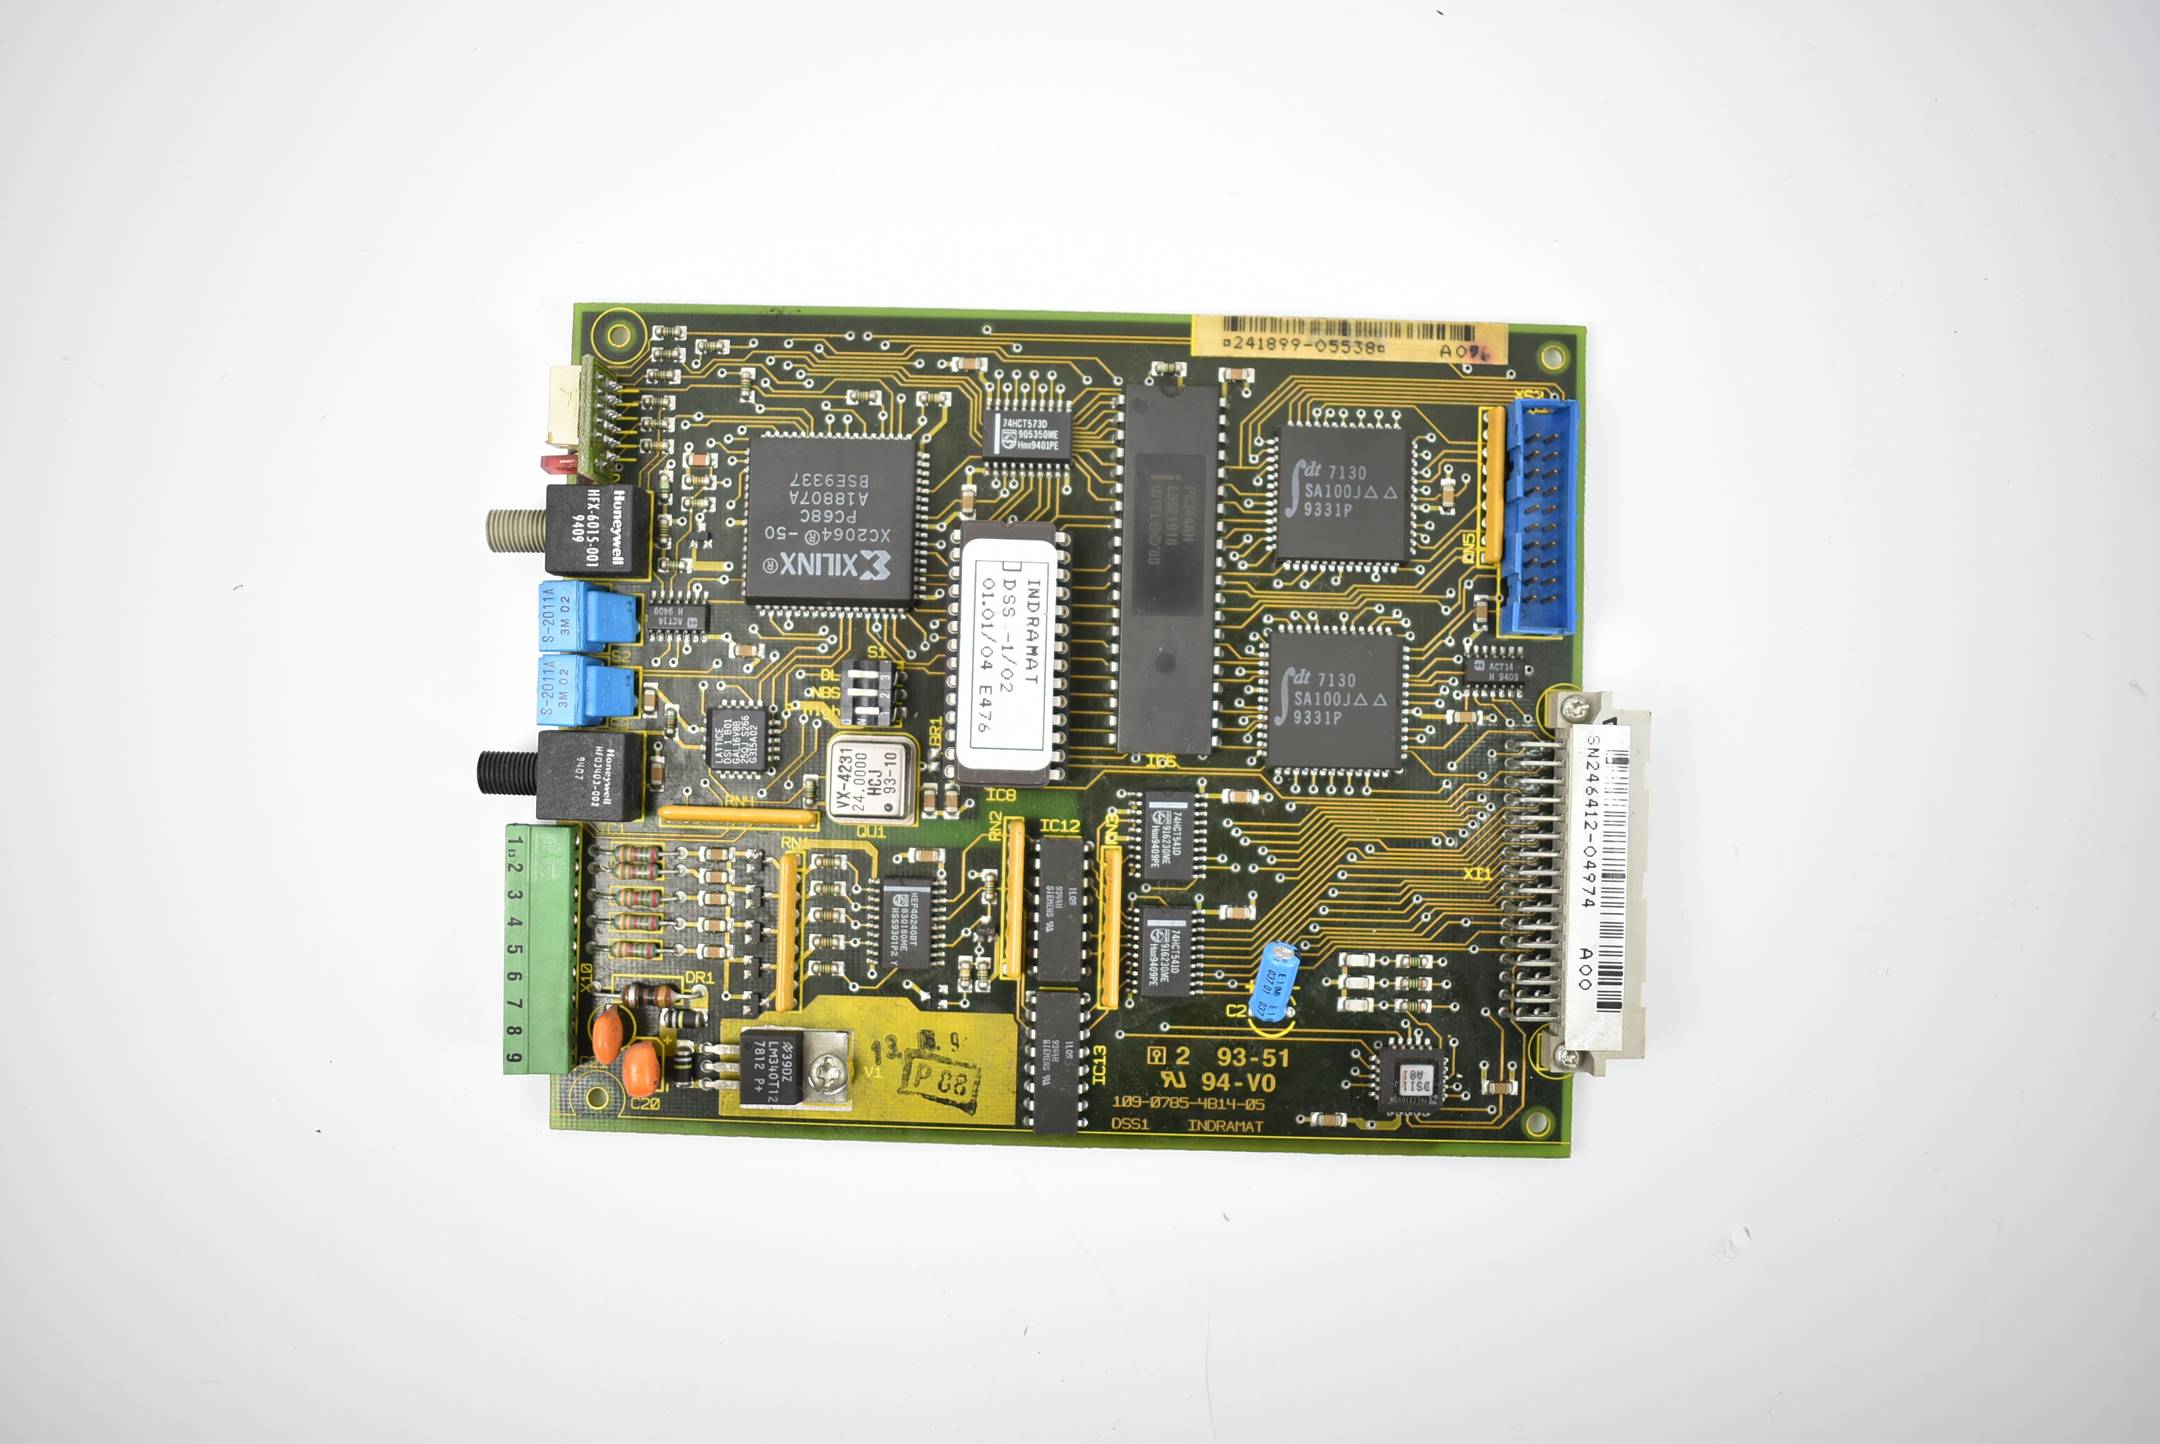 Indramat DSS1 Control Board DSS-1/02 ( 109-0785-4B14-05 )